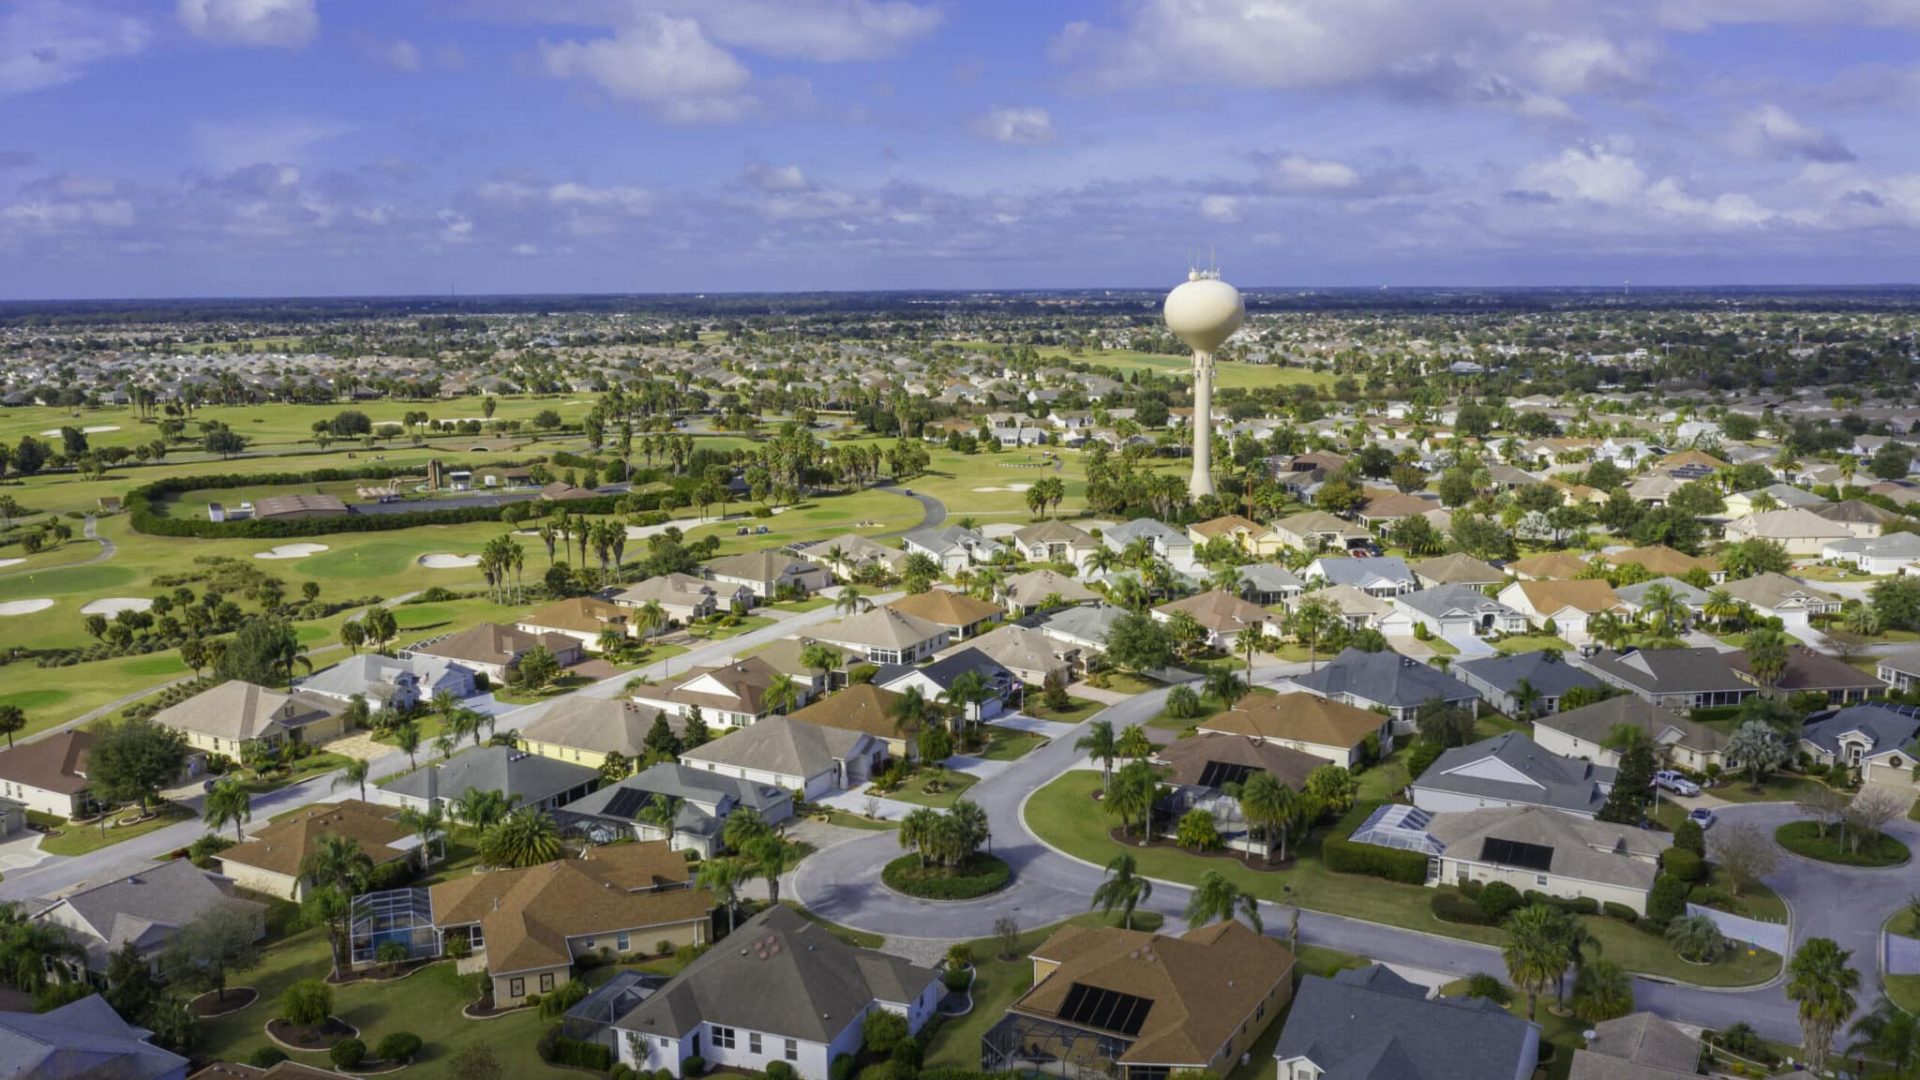 Vista aérea do bairro residencial e campo de golfe localizado em The Villages, uma comunidade de aposentados e golfistas na Flórida.